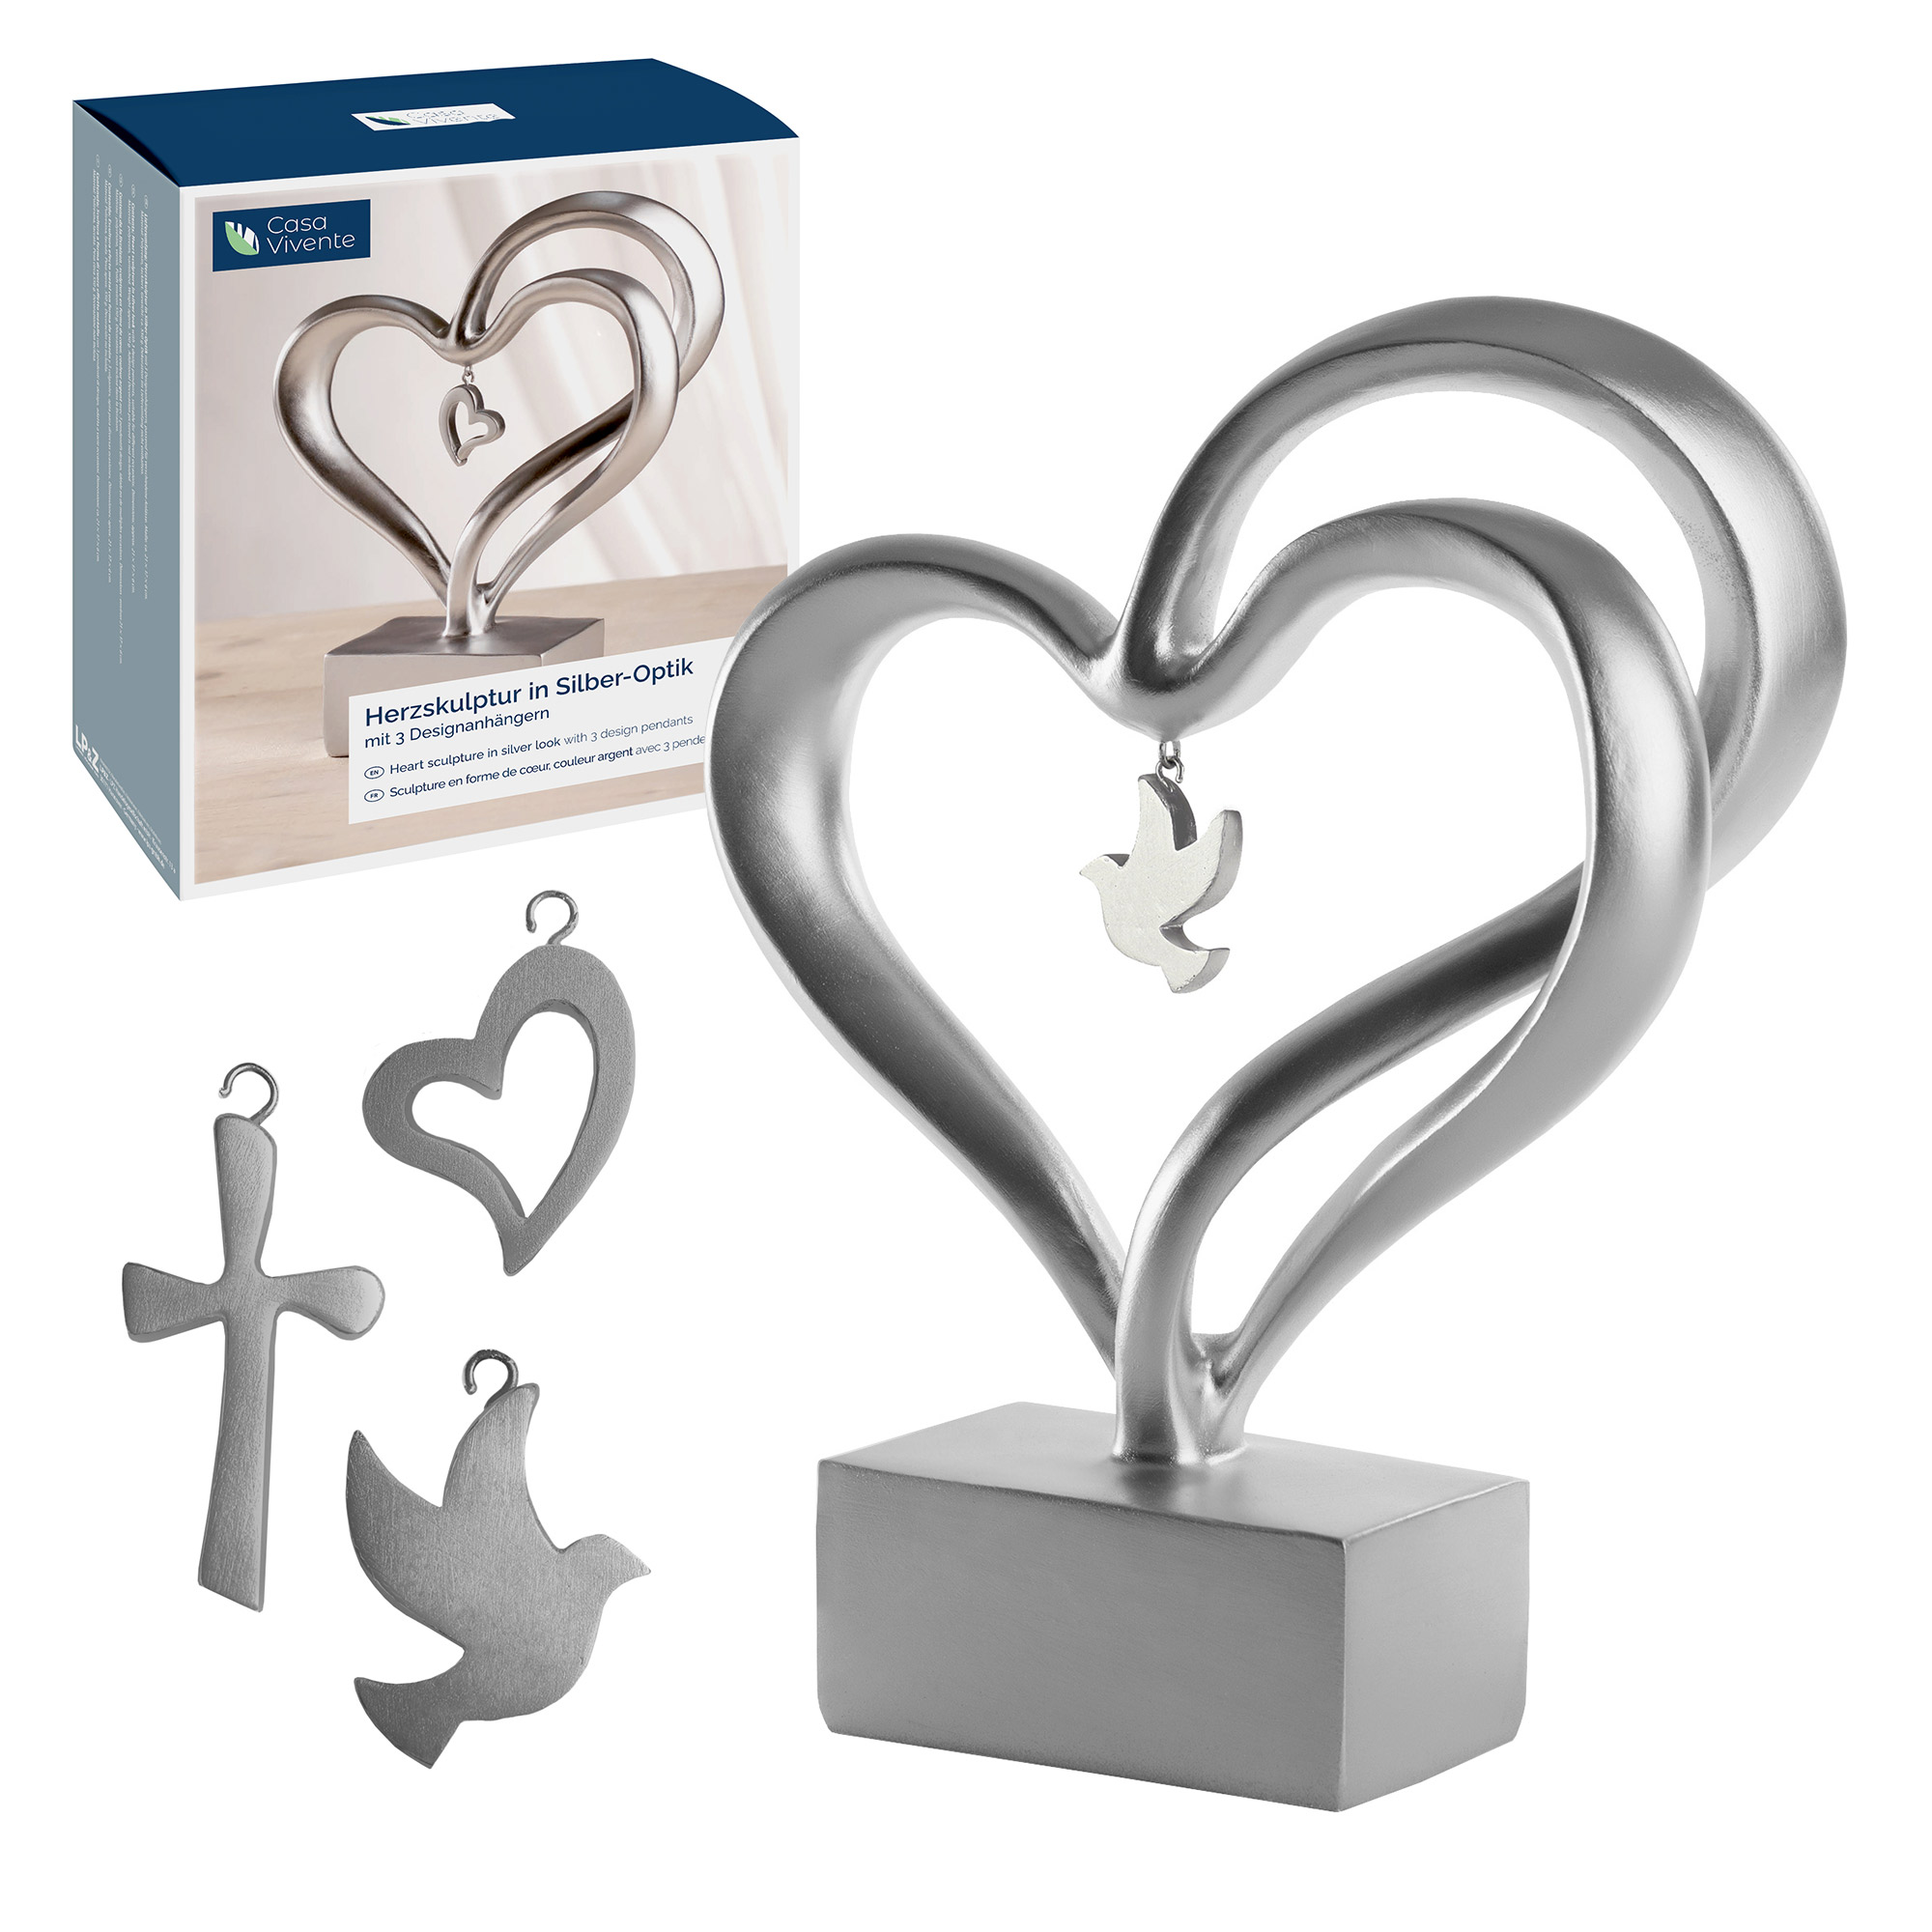 Silberne Skulptur in Herzform, Silber Herz als moderne Dekoration, elegantes Dekoherz mit austauschbaren Kreuz-, Taube- und Herzanhängern